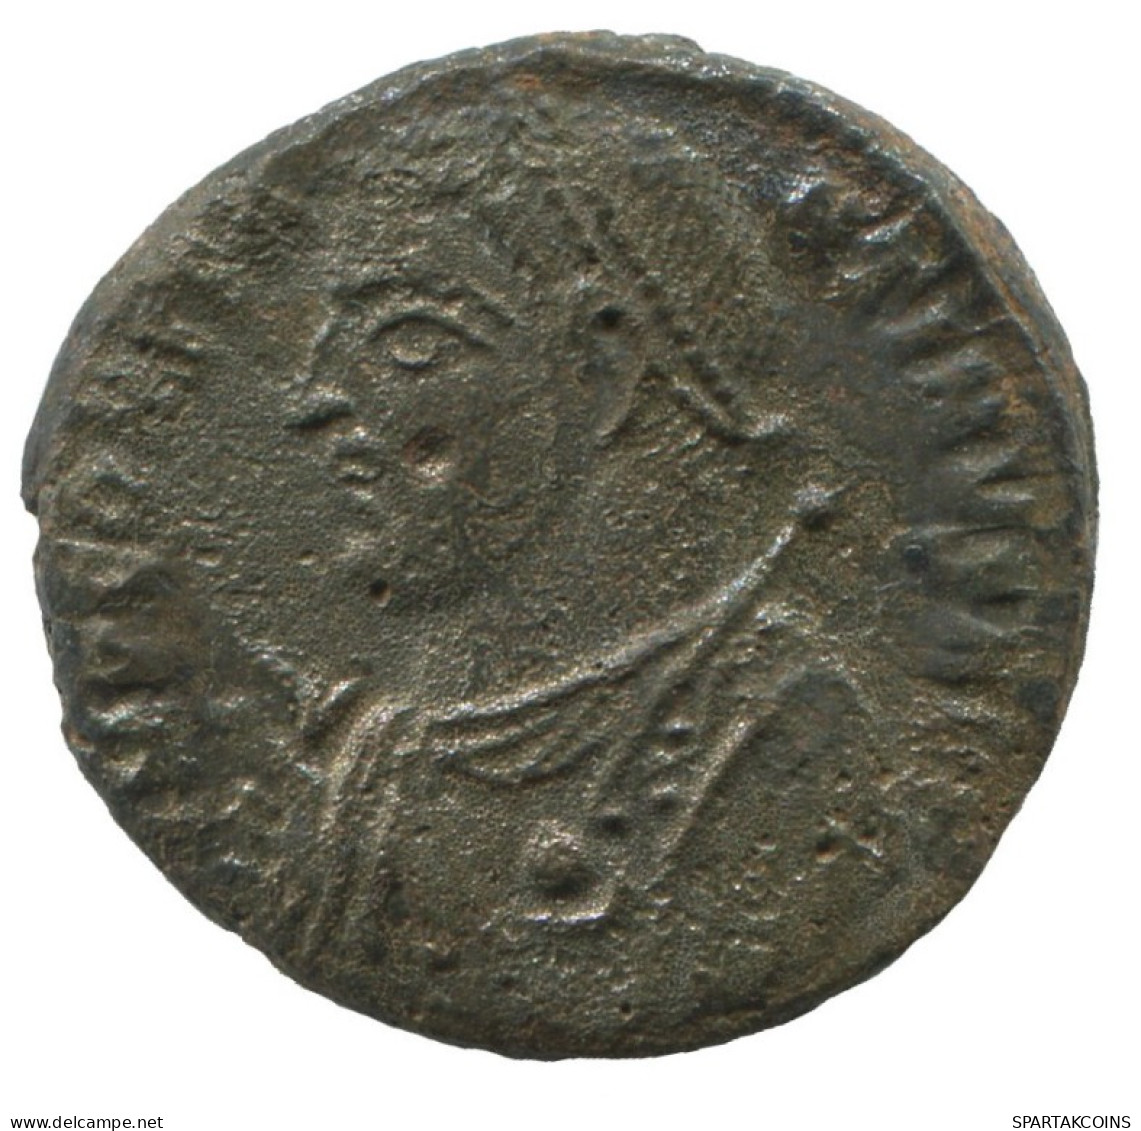 LICINIUS I CYZICUS SMK AD317-320 IOVI CONSERVATORI AVGG 2.8g/18mm #ANN1617.30.D.A - El Imperio Christiano (307 / 363)